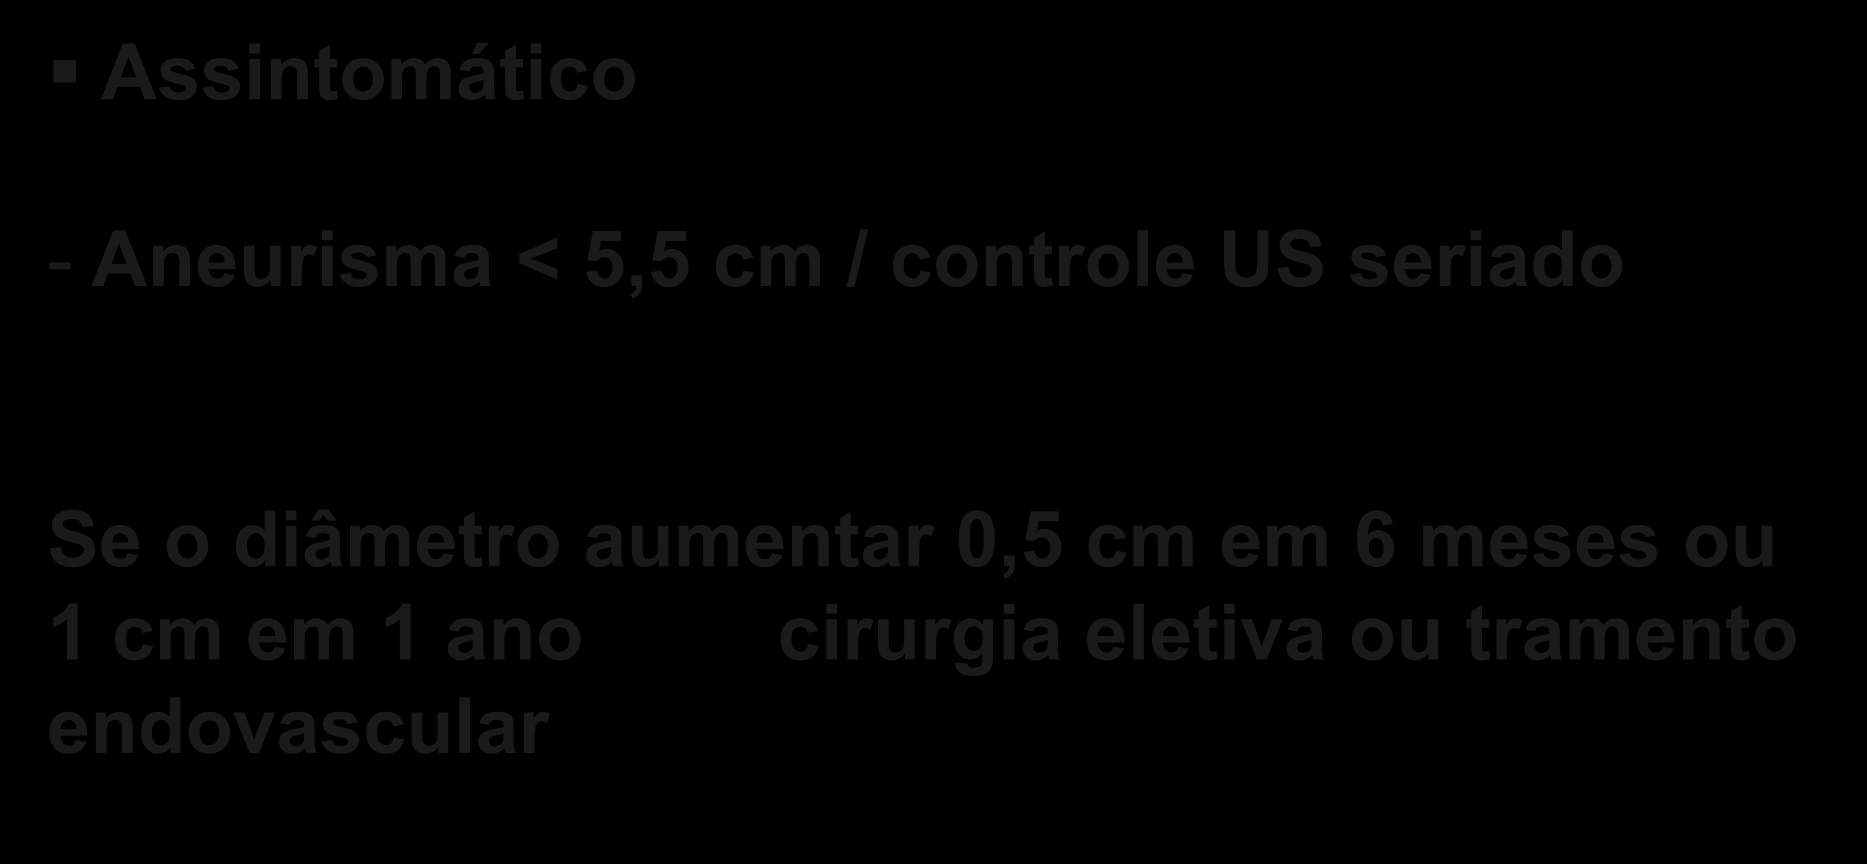 Tratamento Assintomático - Aneurisma < 5,5 cm / controle US seriado Se o diâmetro